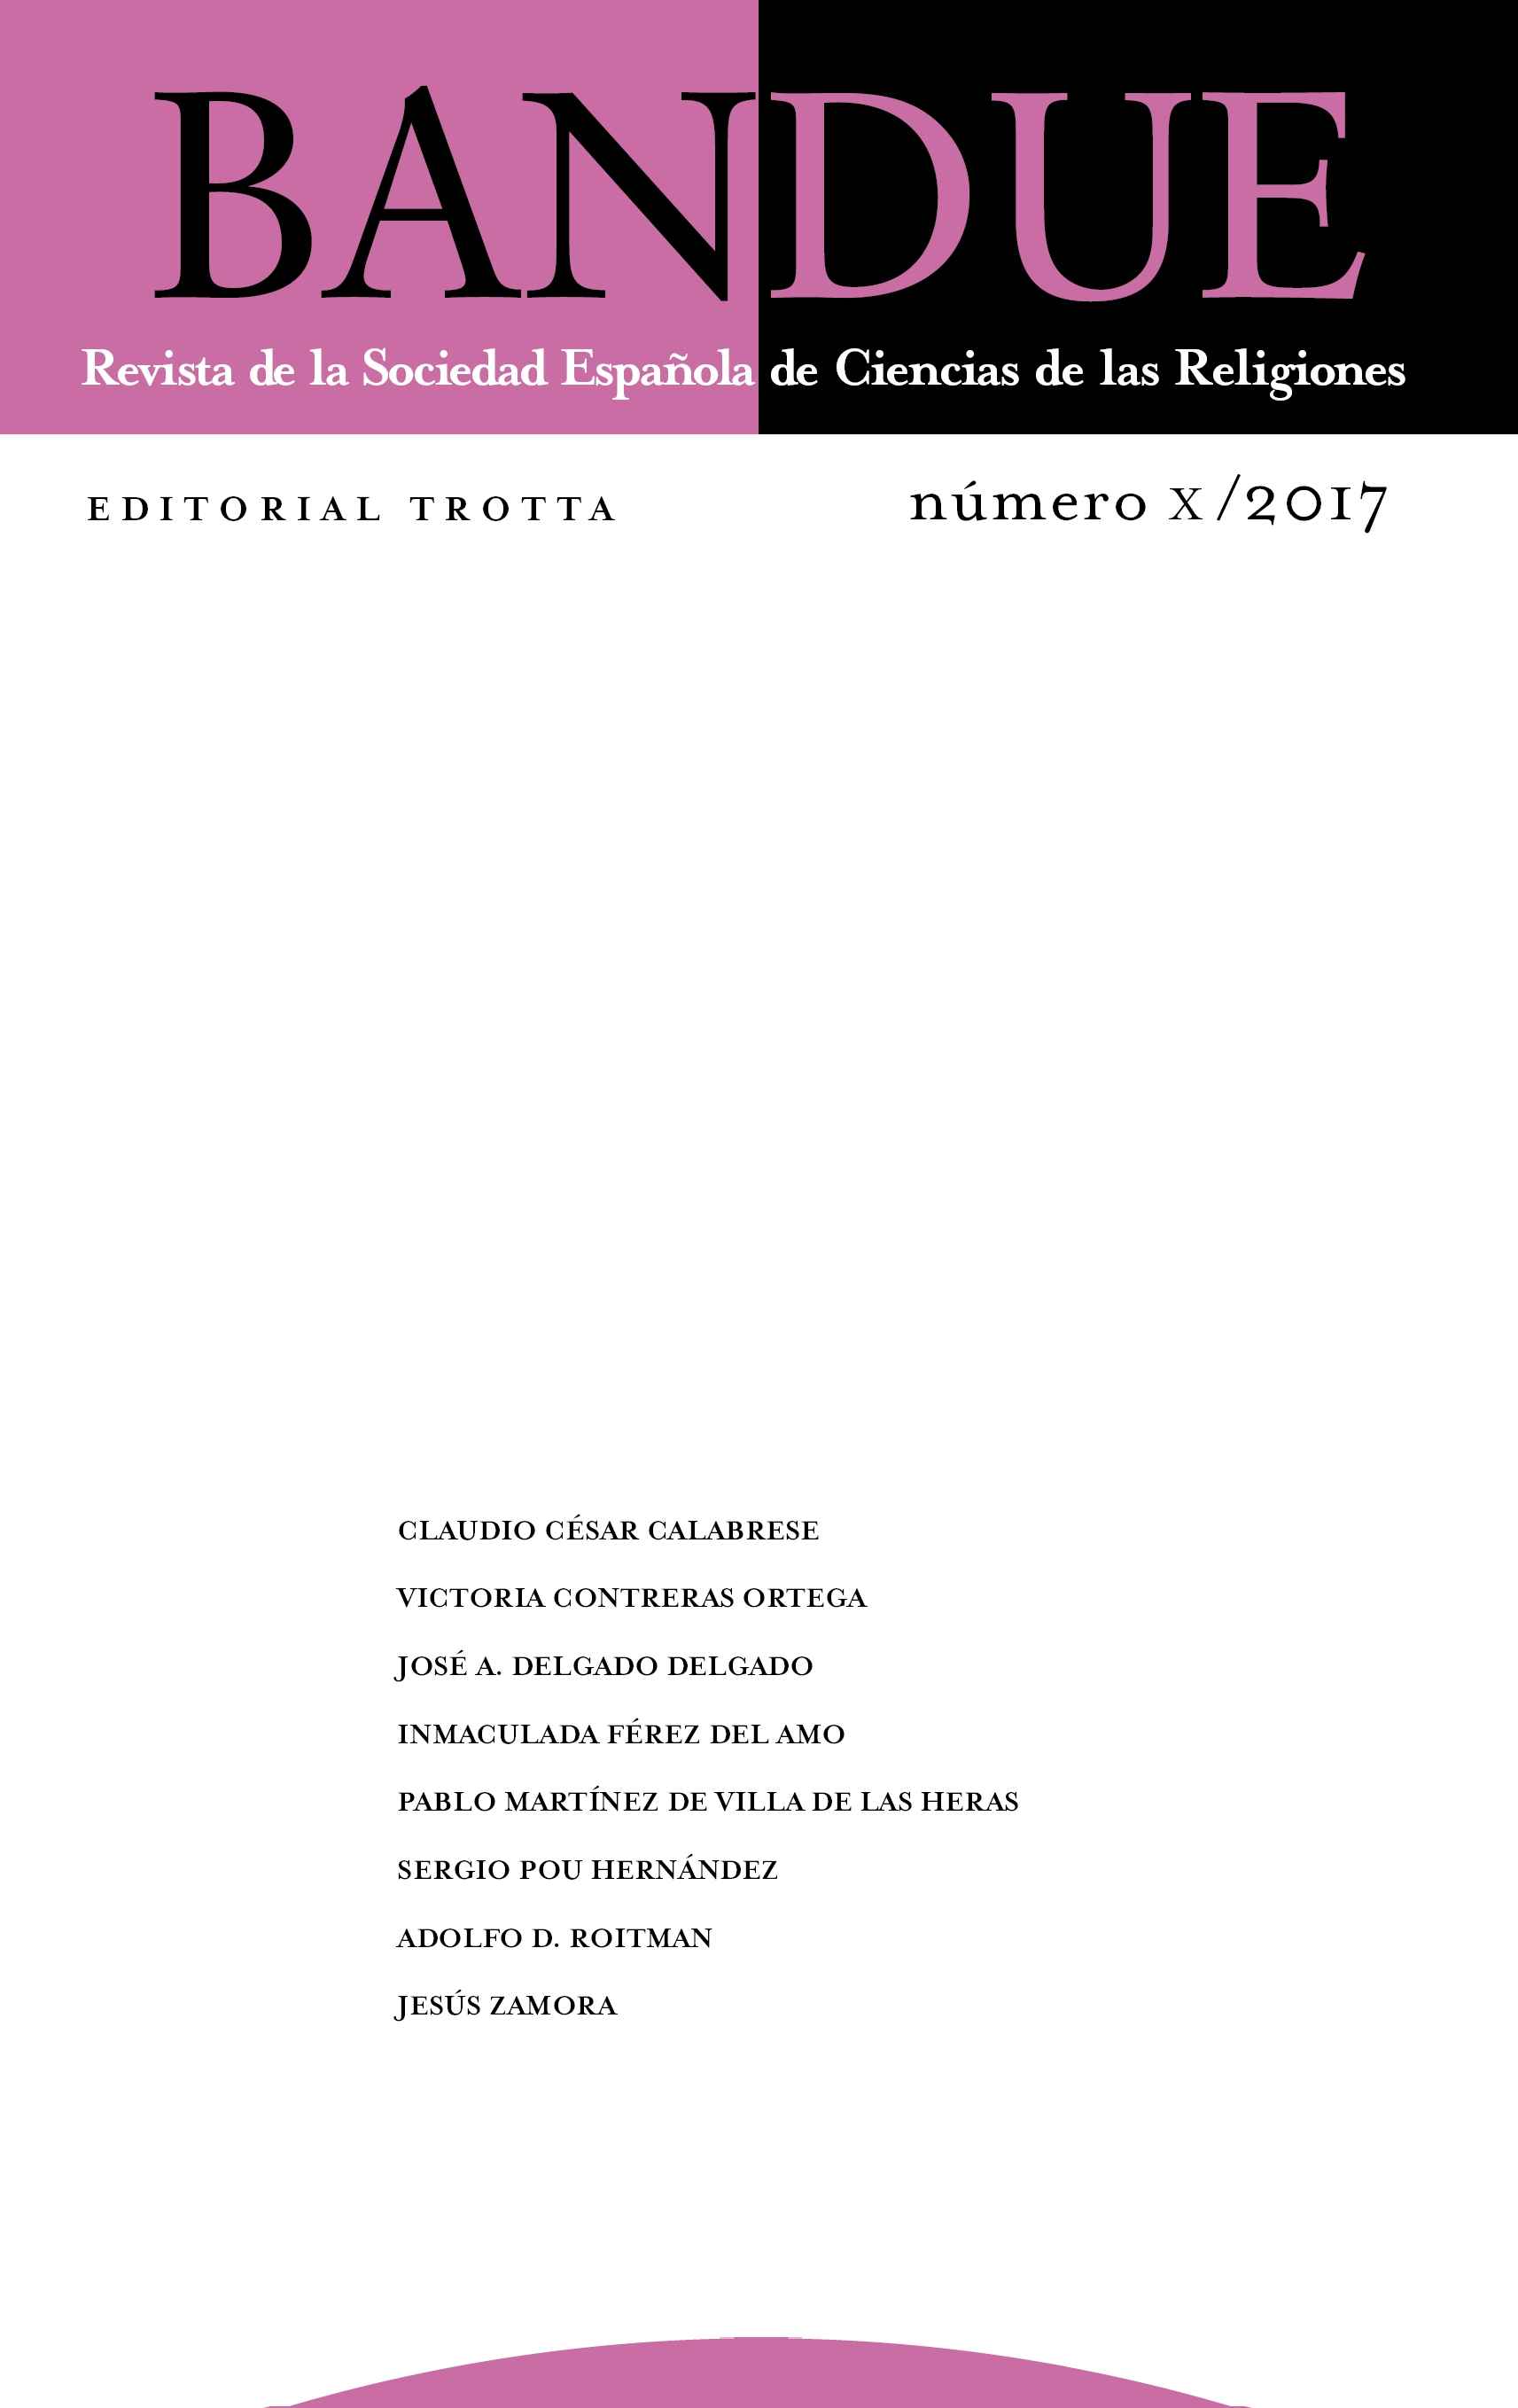 Revista Bandue nº X / 2017